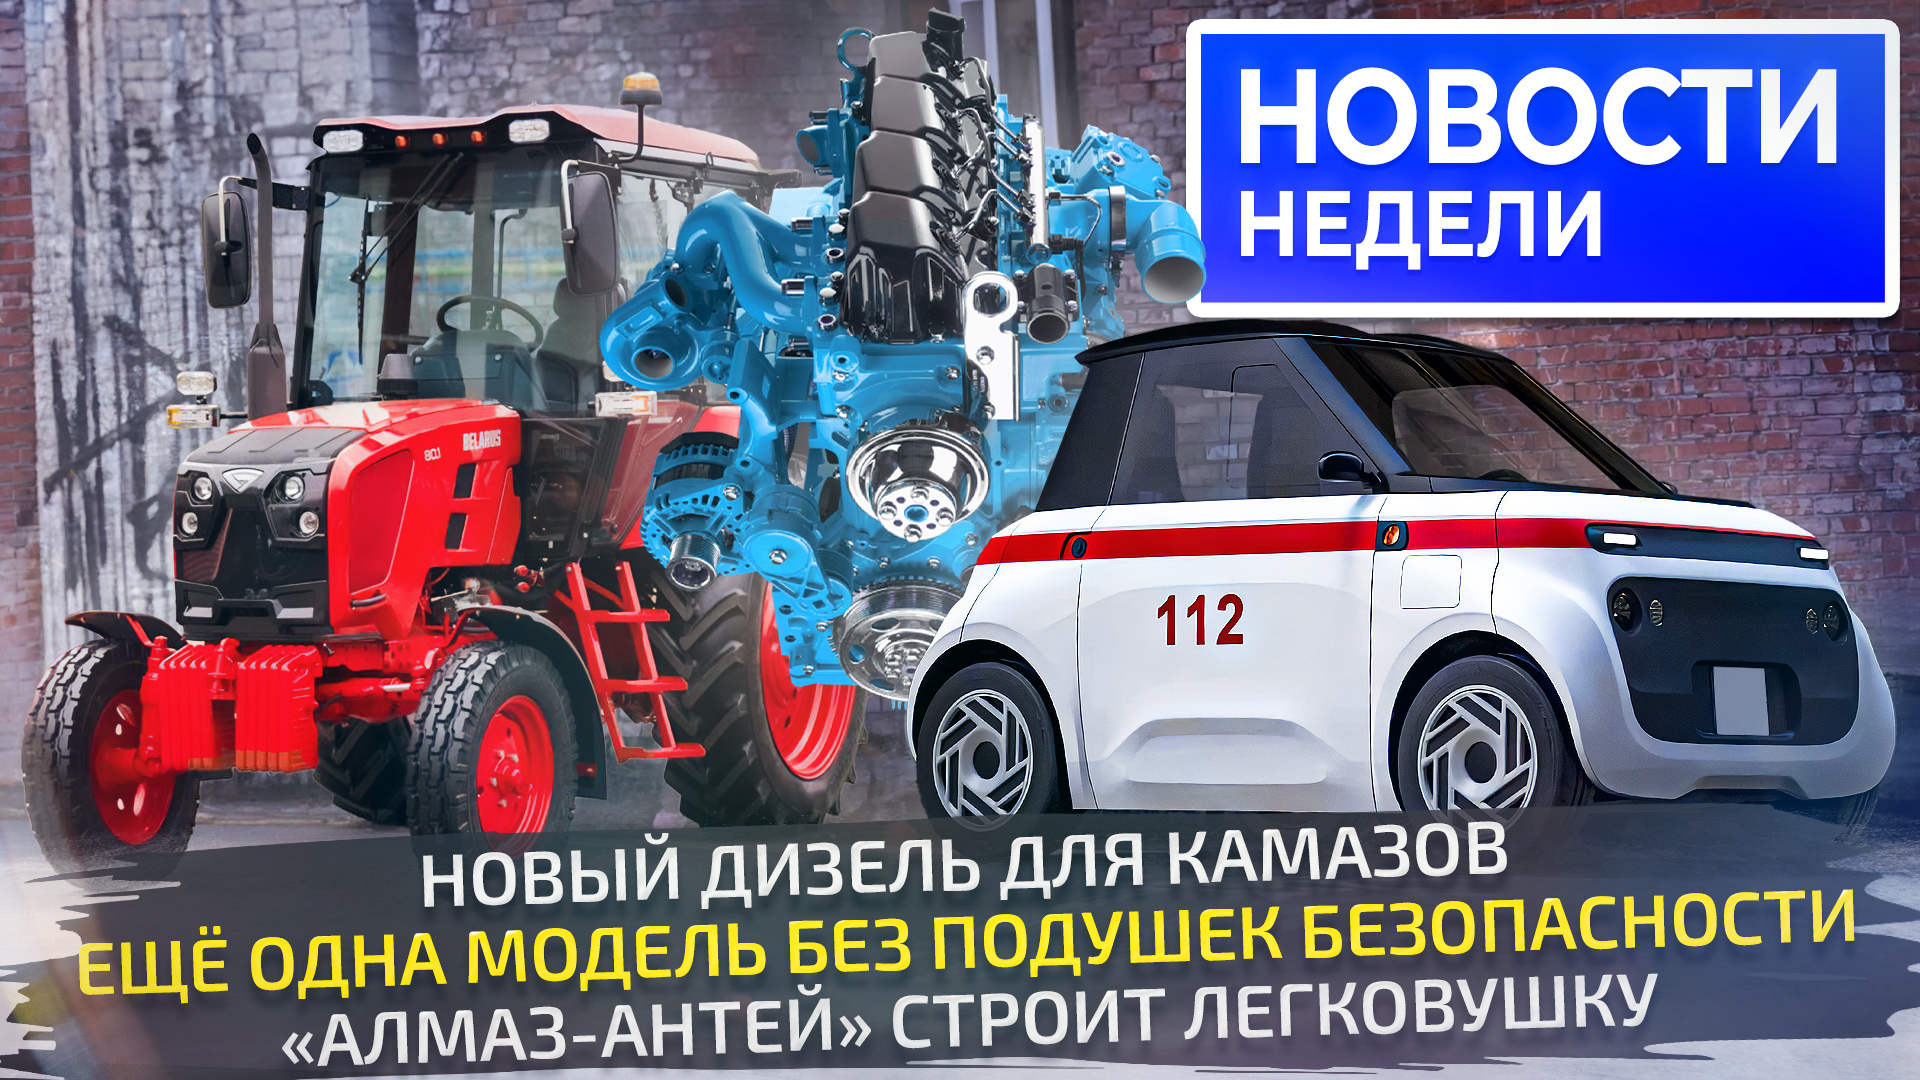 Новый дизель КамАЗов, микрокар «Алмаз-Антея» и снова машины без подушек 📺 «Новости недели» №264